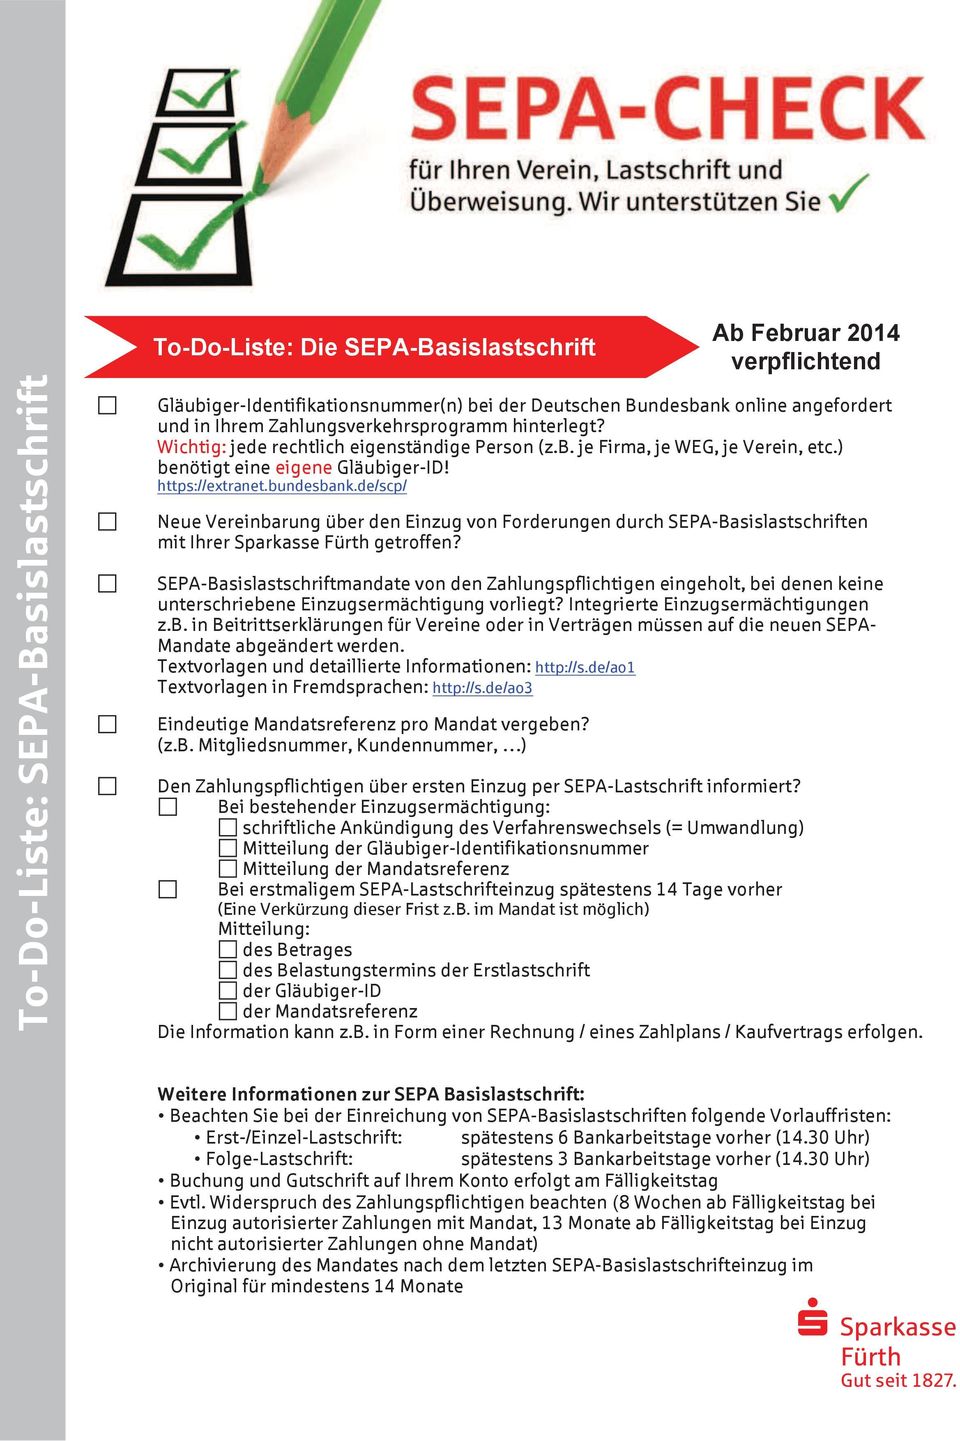 de/scp/ Neue Vereinbarung über den Einzug von Forderungen durch SEPA-Basislastschriften mit Ihrer Sparkasse getroffen?